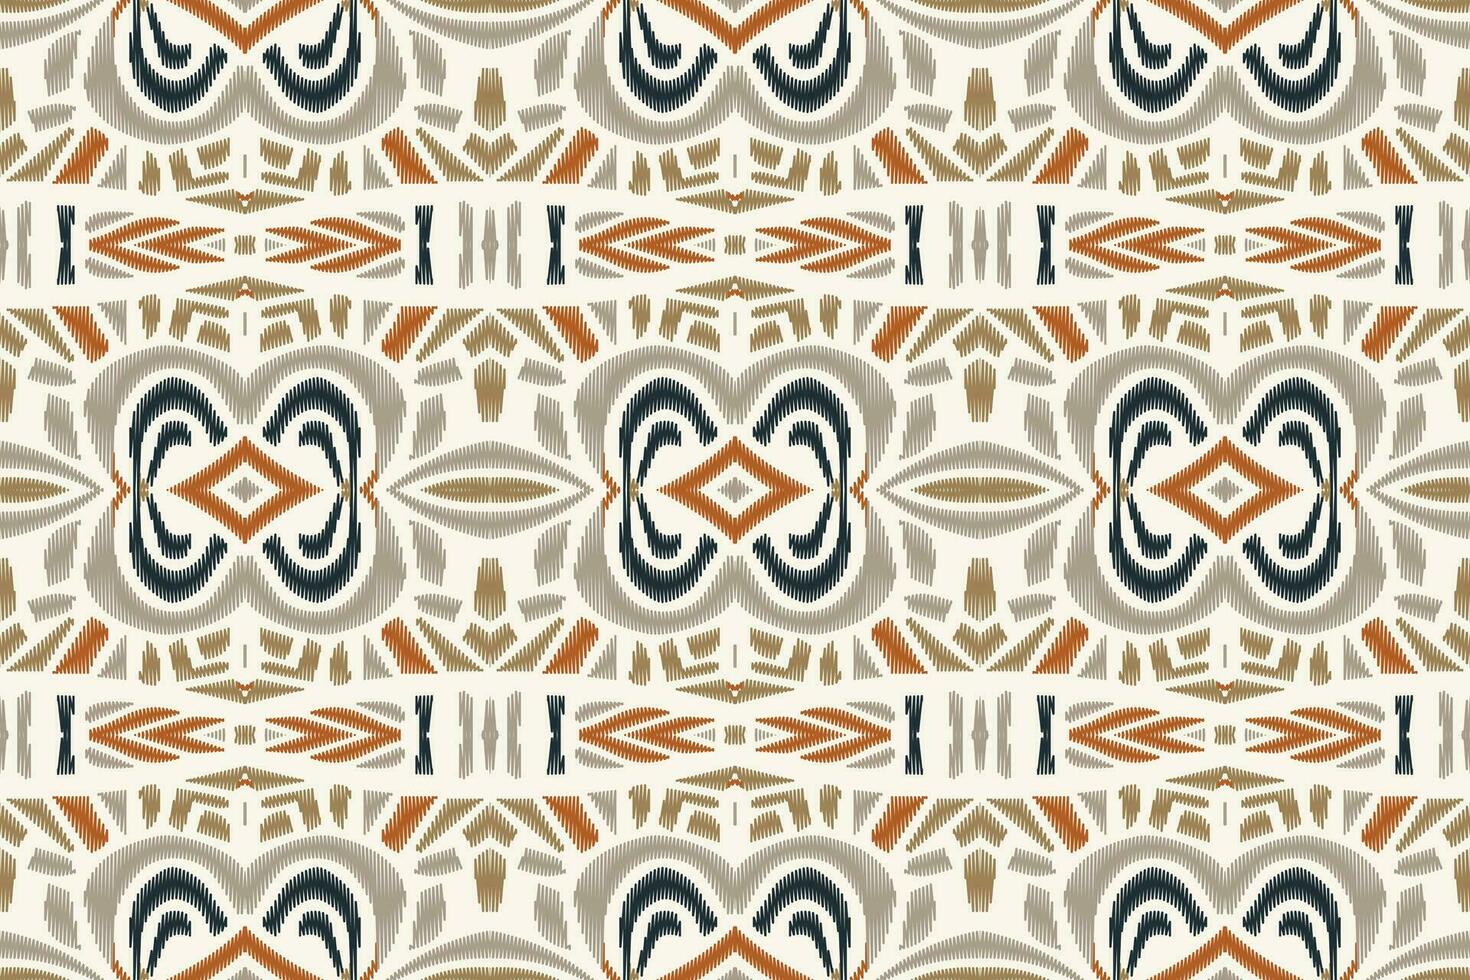 ikat blommig paisley broderi bakgrund. ikat grafik geometrisk etnisk orientalisk mönster traditionell.aztec stil abstrakt vektor illustration.design för textur, tyg, kläder, inslagning, sarong.